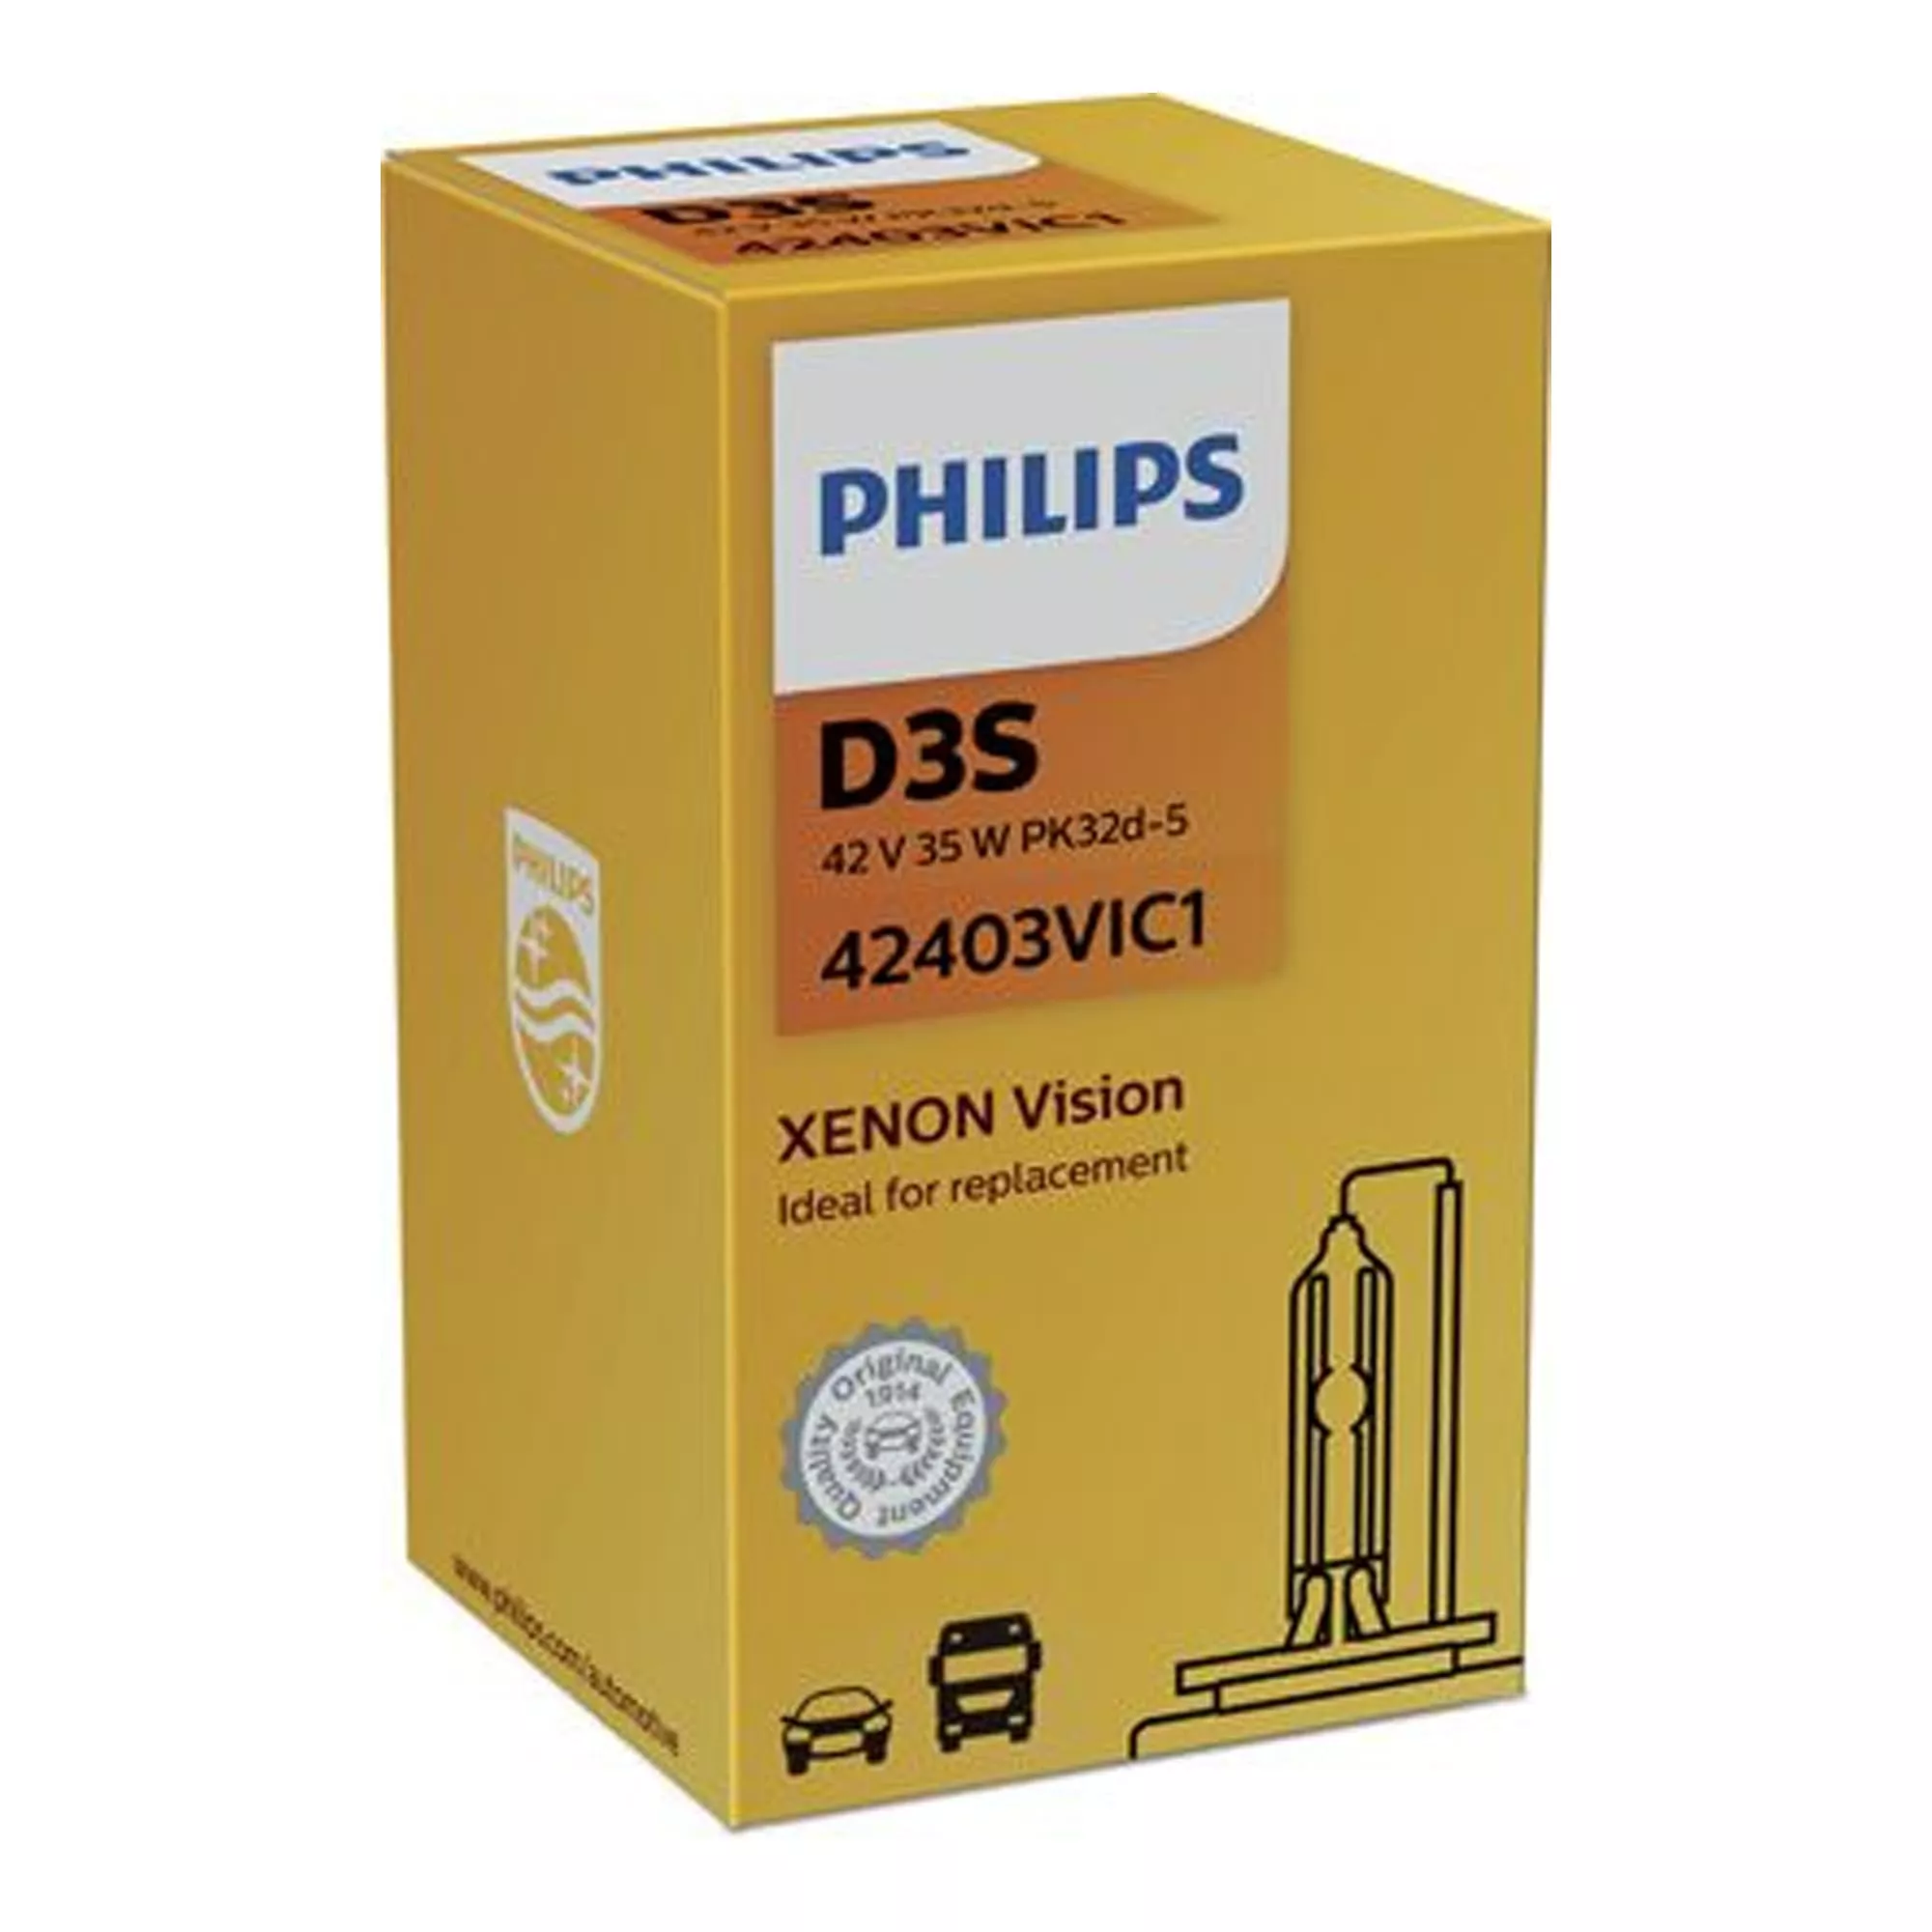 Лампа Philips Xenon Vision D3S 42V 35W 42403 VI C1